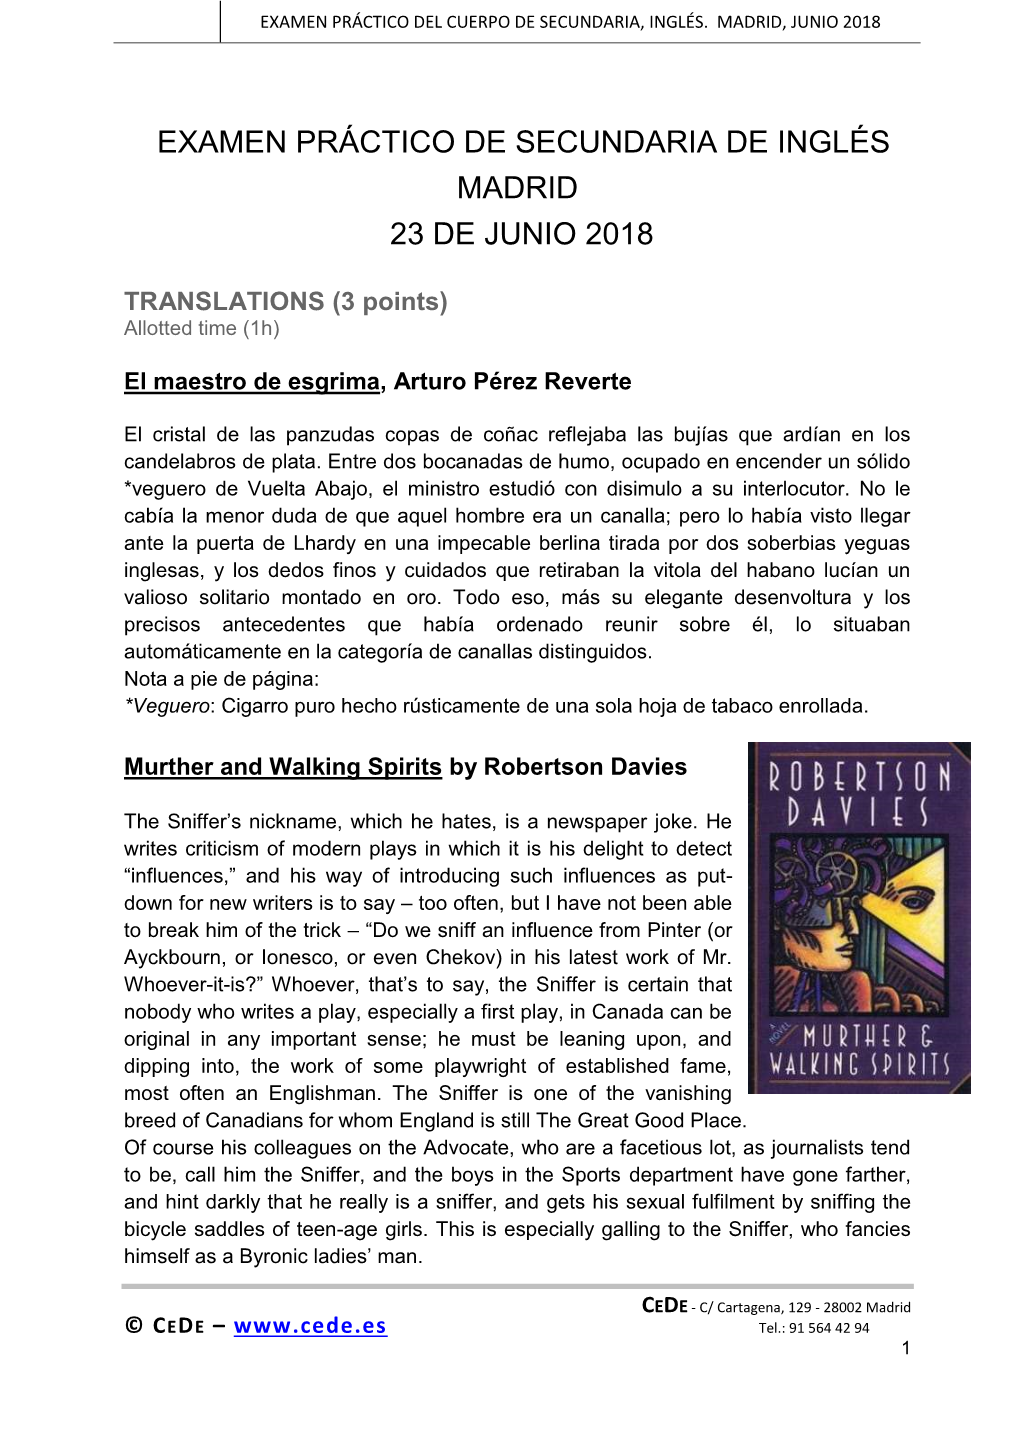 Examen Práctico De Secundaria De Inglés Madrid 23 De Junio 2018